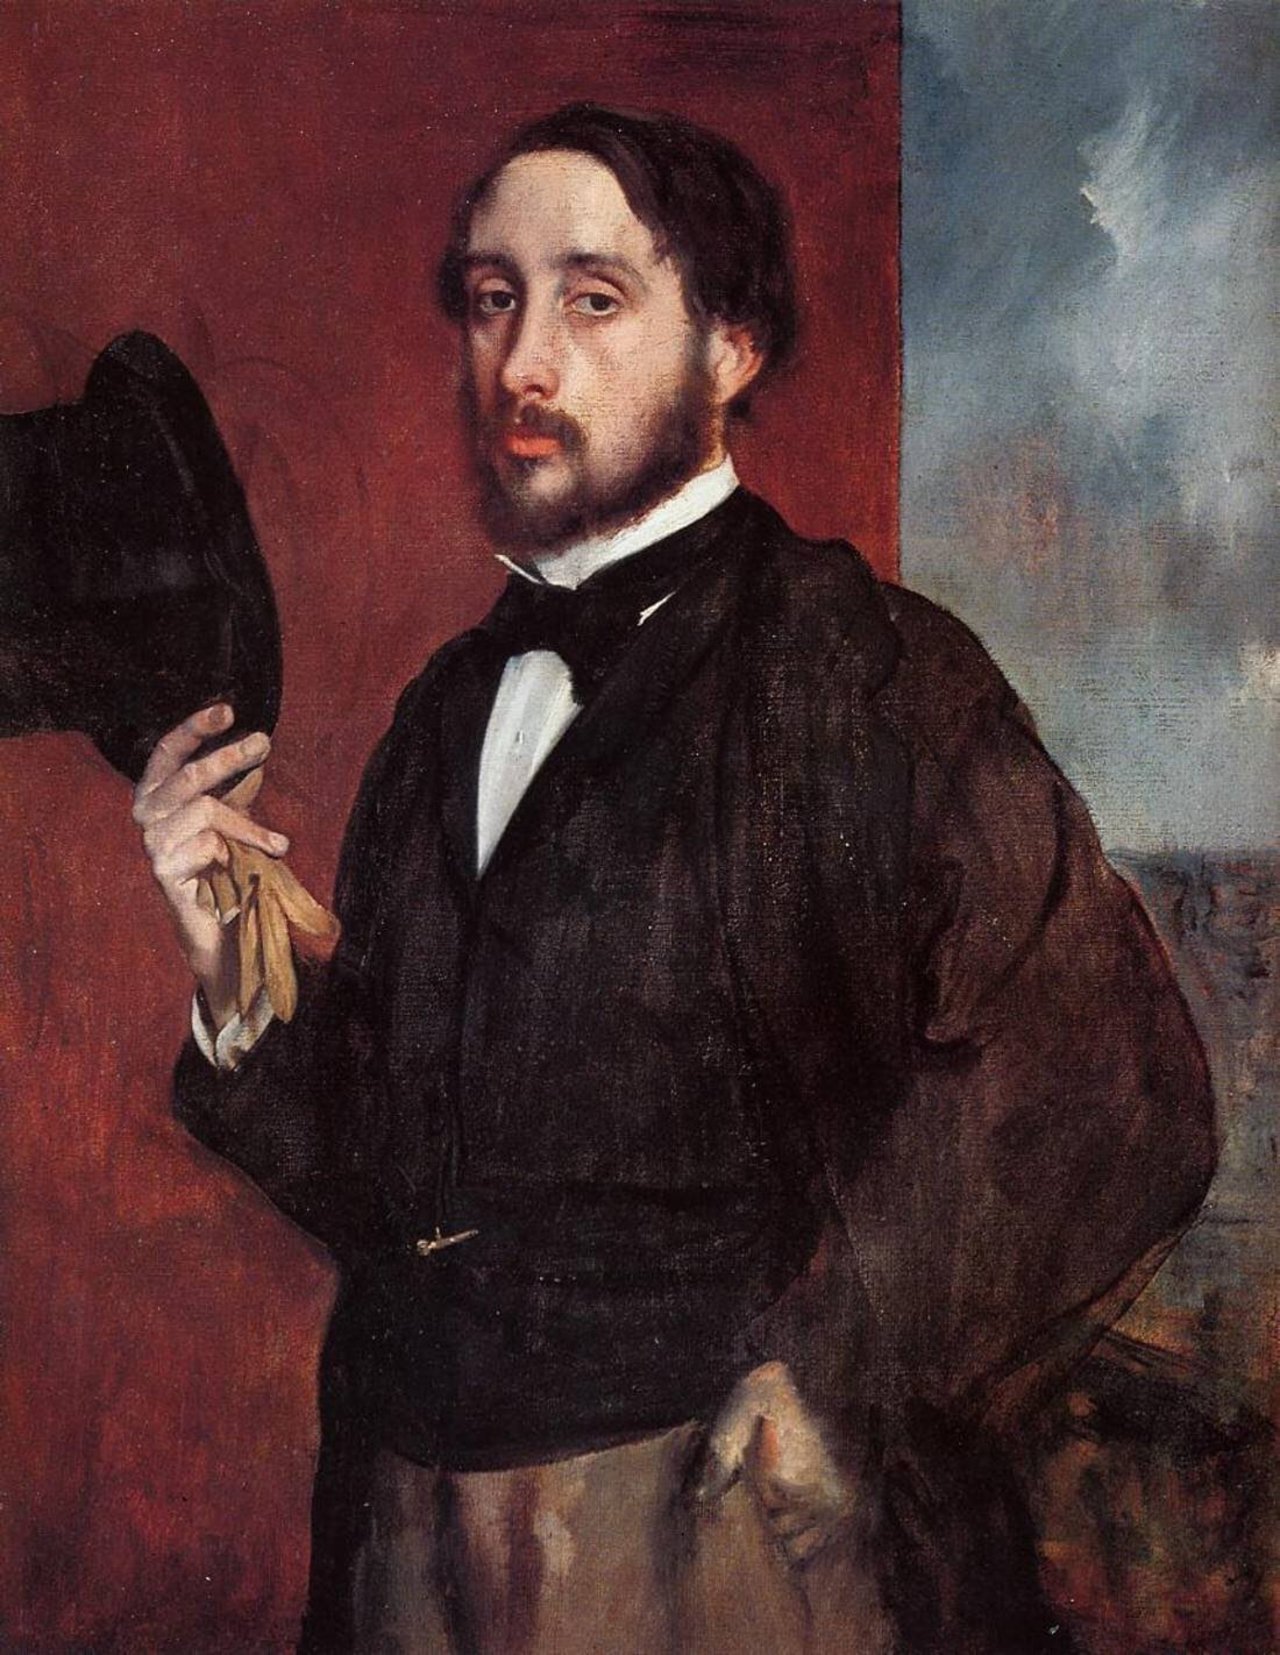 Self Portrait. Edgar Degas, 1866. #degas #art #arthistory https://t.co/YWhg9gpWff